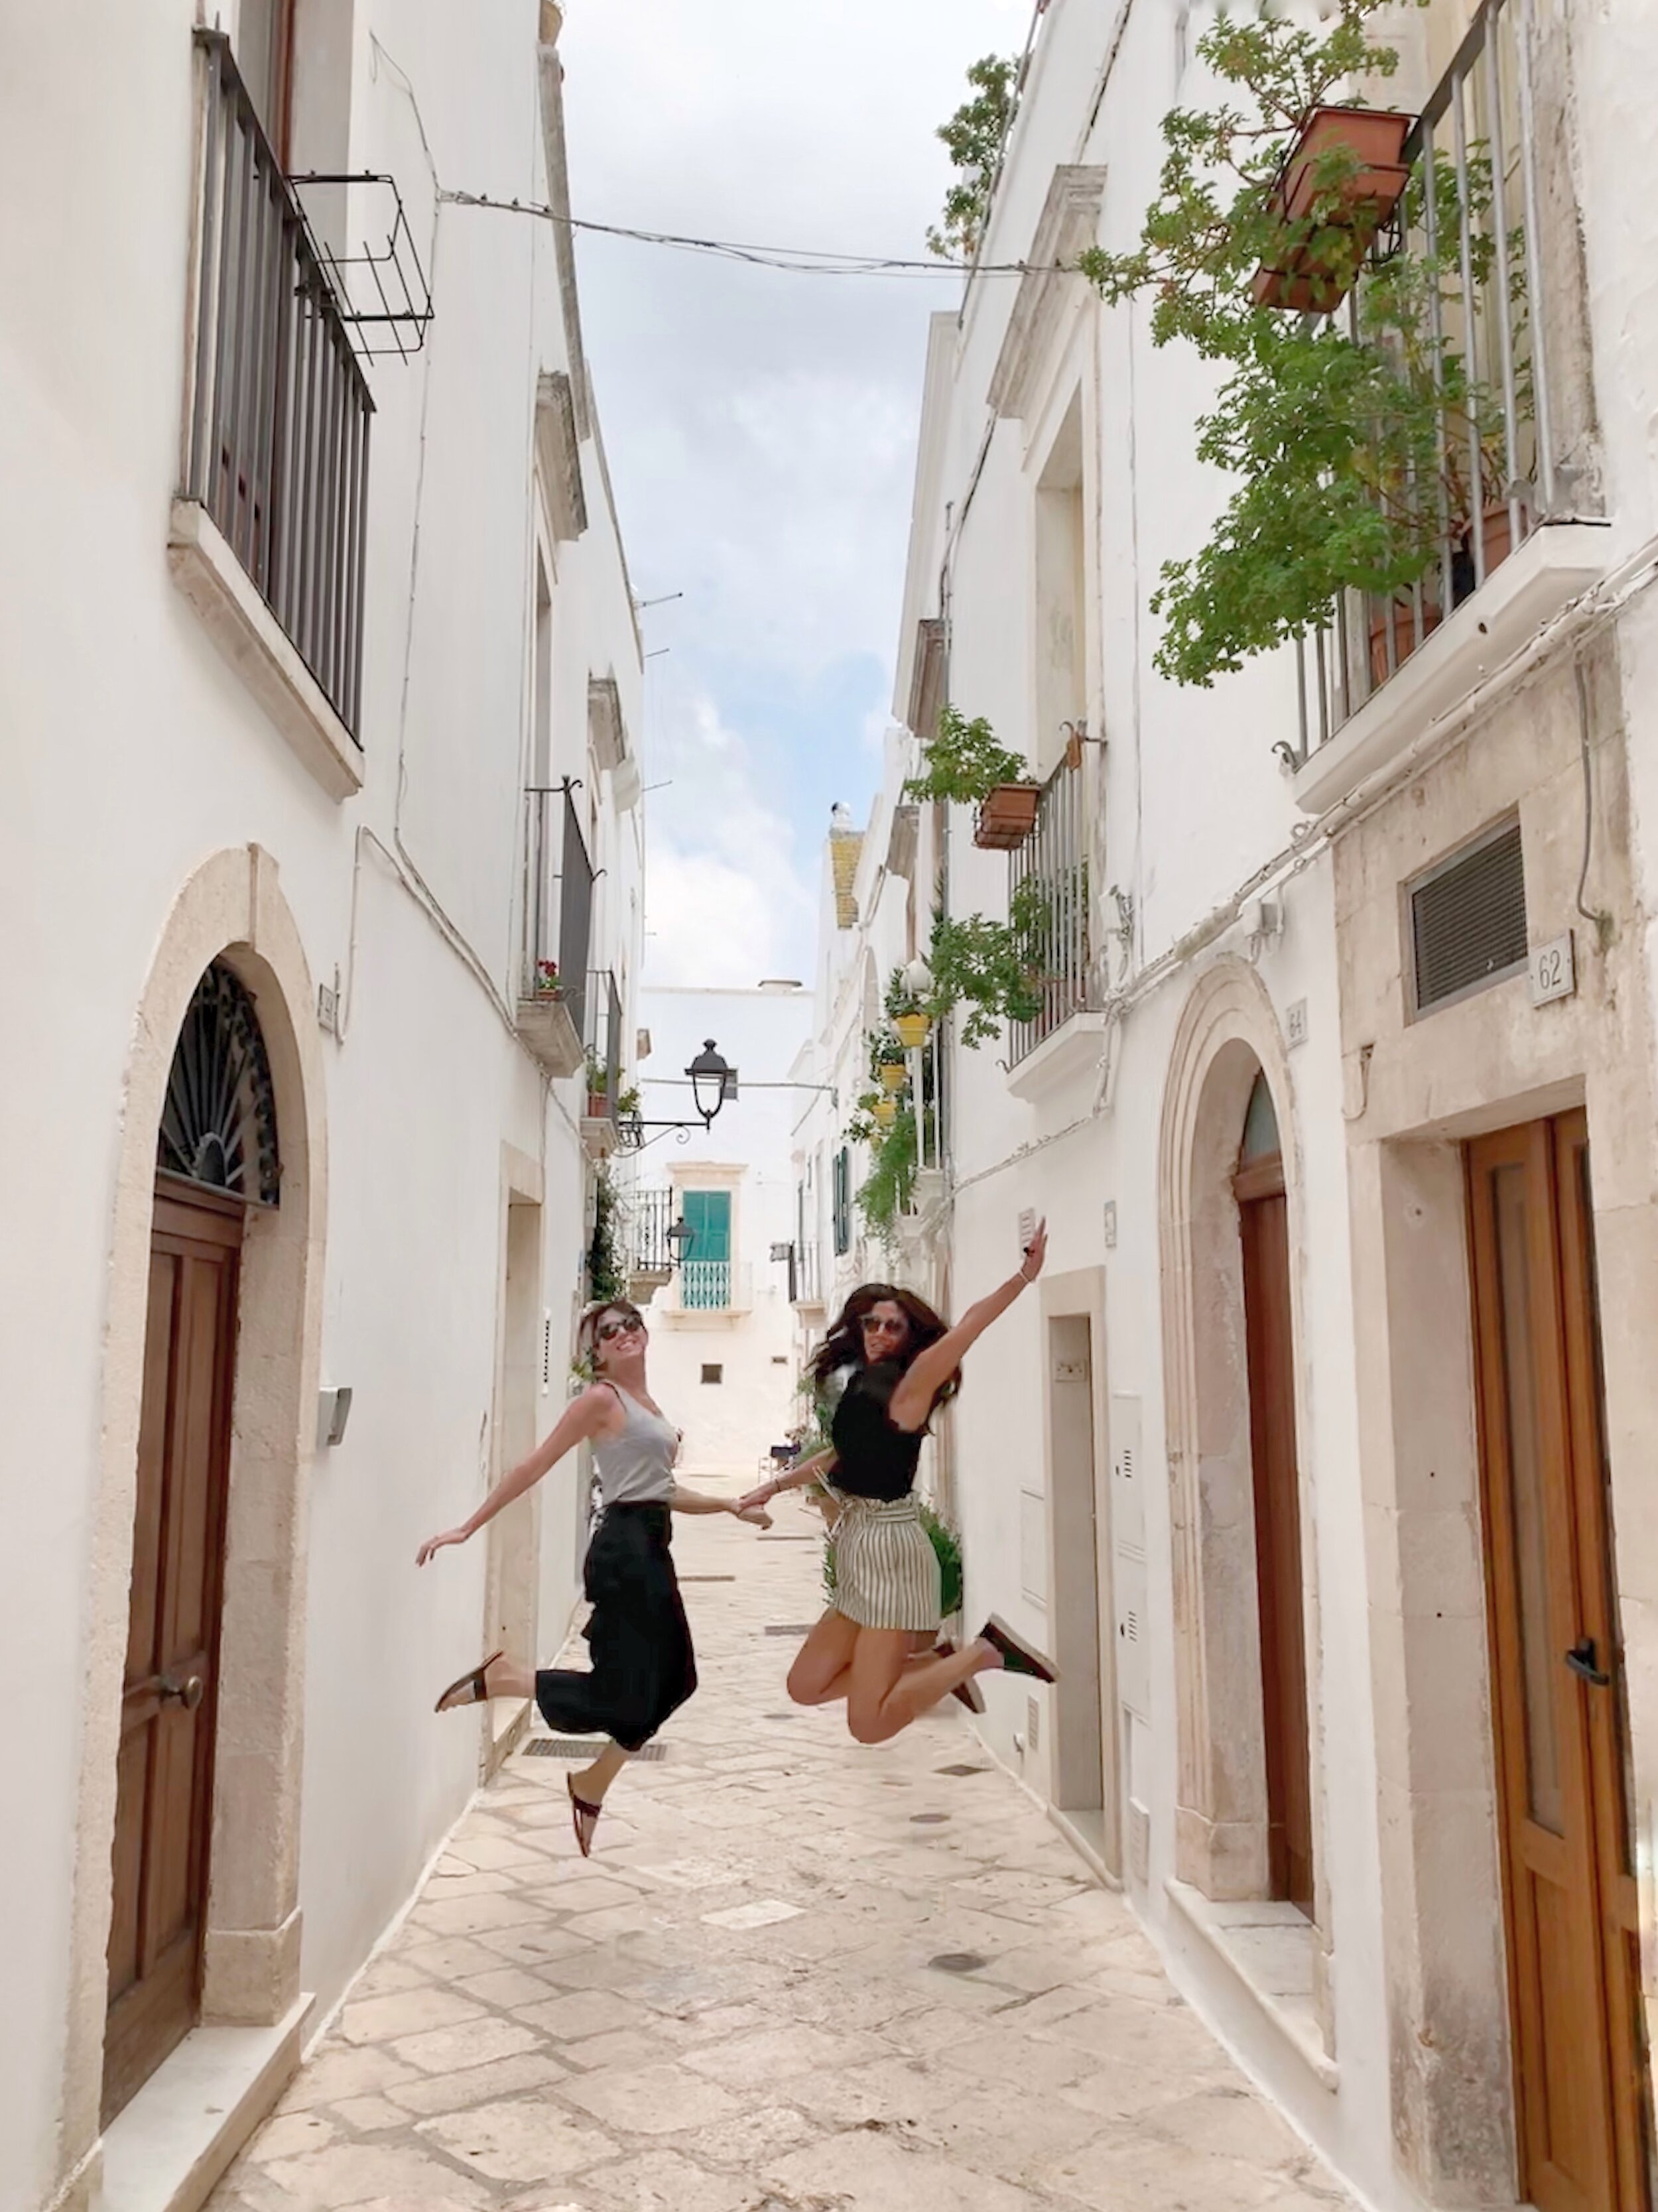  Exploring Alberobello in Puglia, Italy on a yoga retreat 